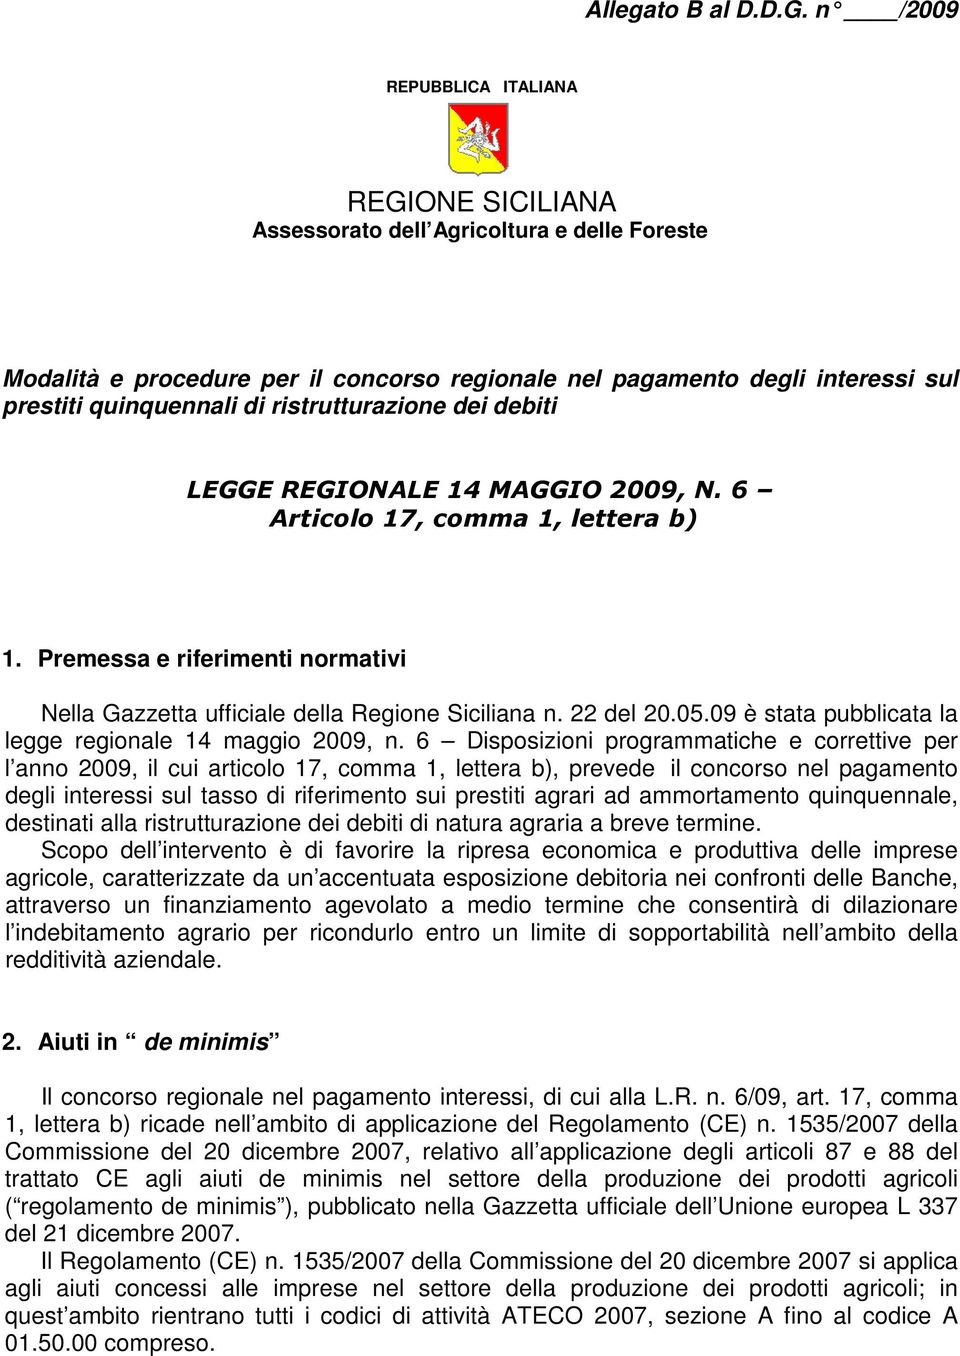 ristrutturazione dei debiti LEGGE REGIONALE 14 MAGGIO 2009, N. 6 Articolo 17, comma 1, lettera b) 1. Premessa e riferimenti normativi Nella Gazzetta ufficiale della Regione Siciliana n. 22 del 20.05.